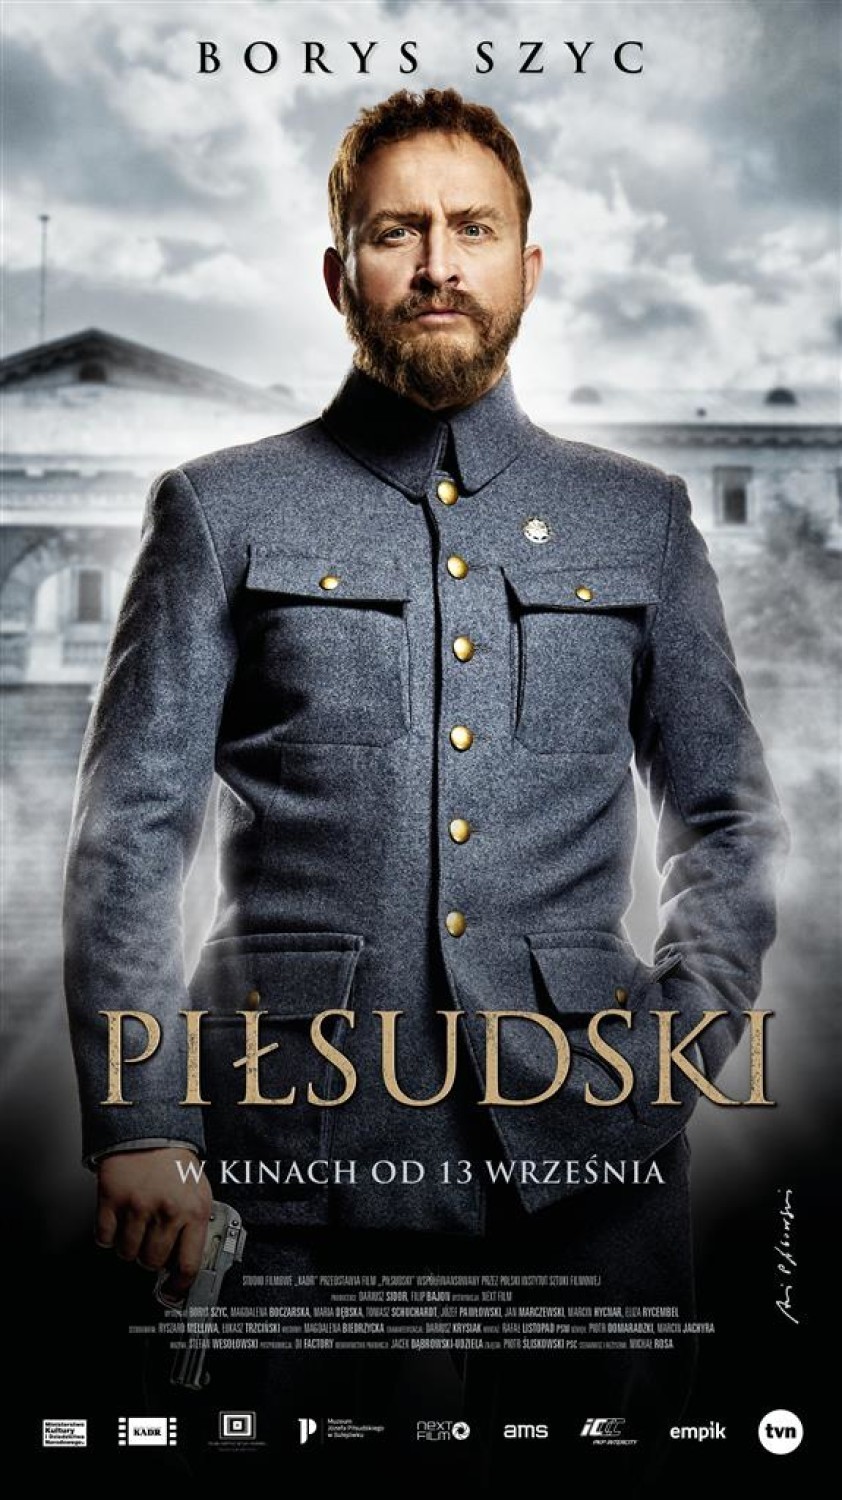 ,,Piłsudski" z Borysem Szycem od dziś w kinie ,,Hel". Jakie jeszcze filmy można zobaczyć?